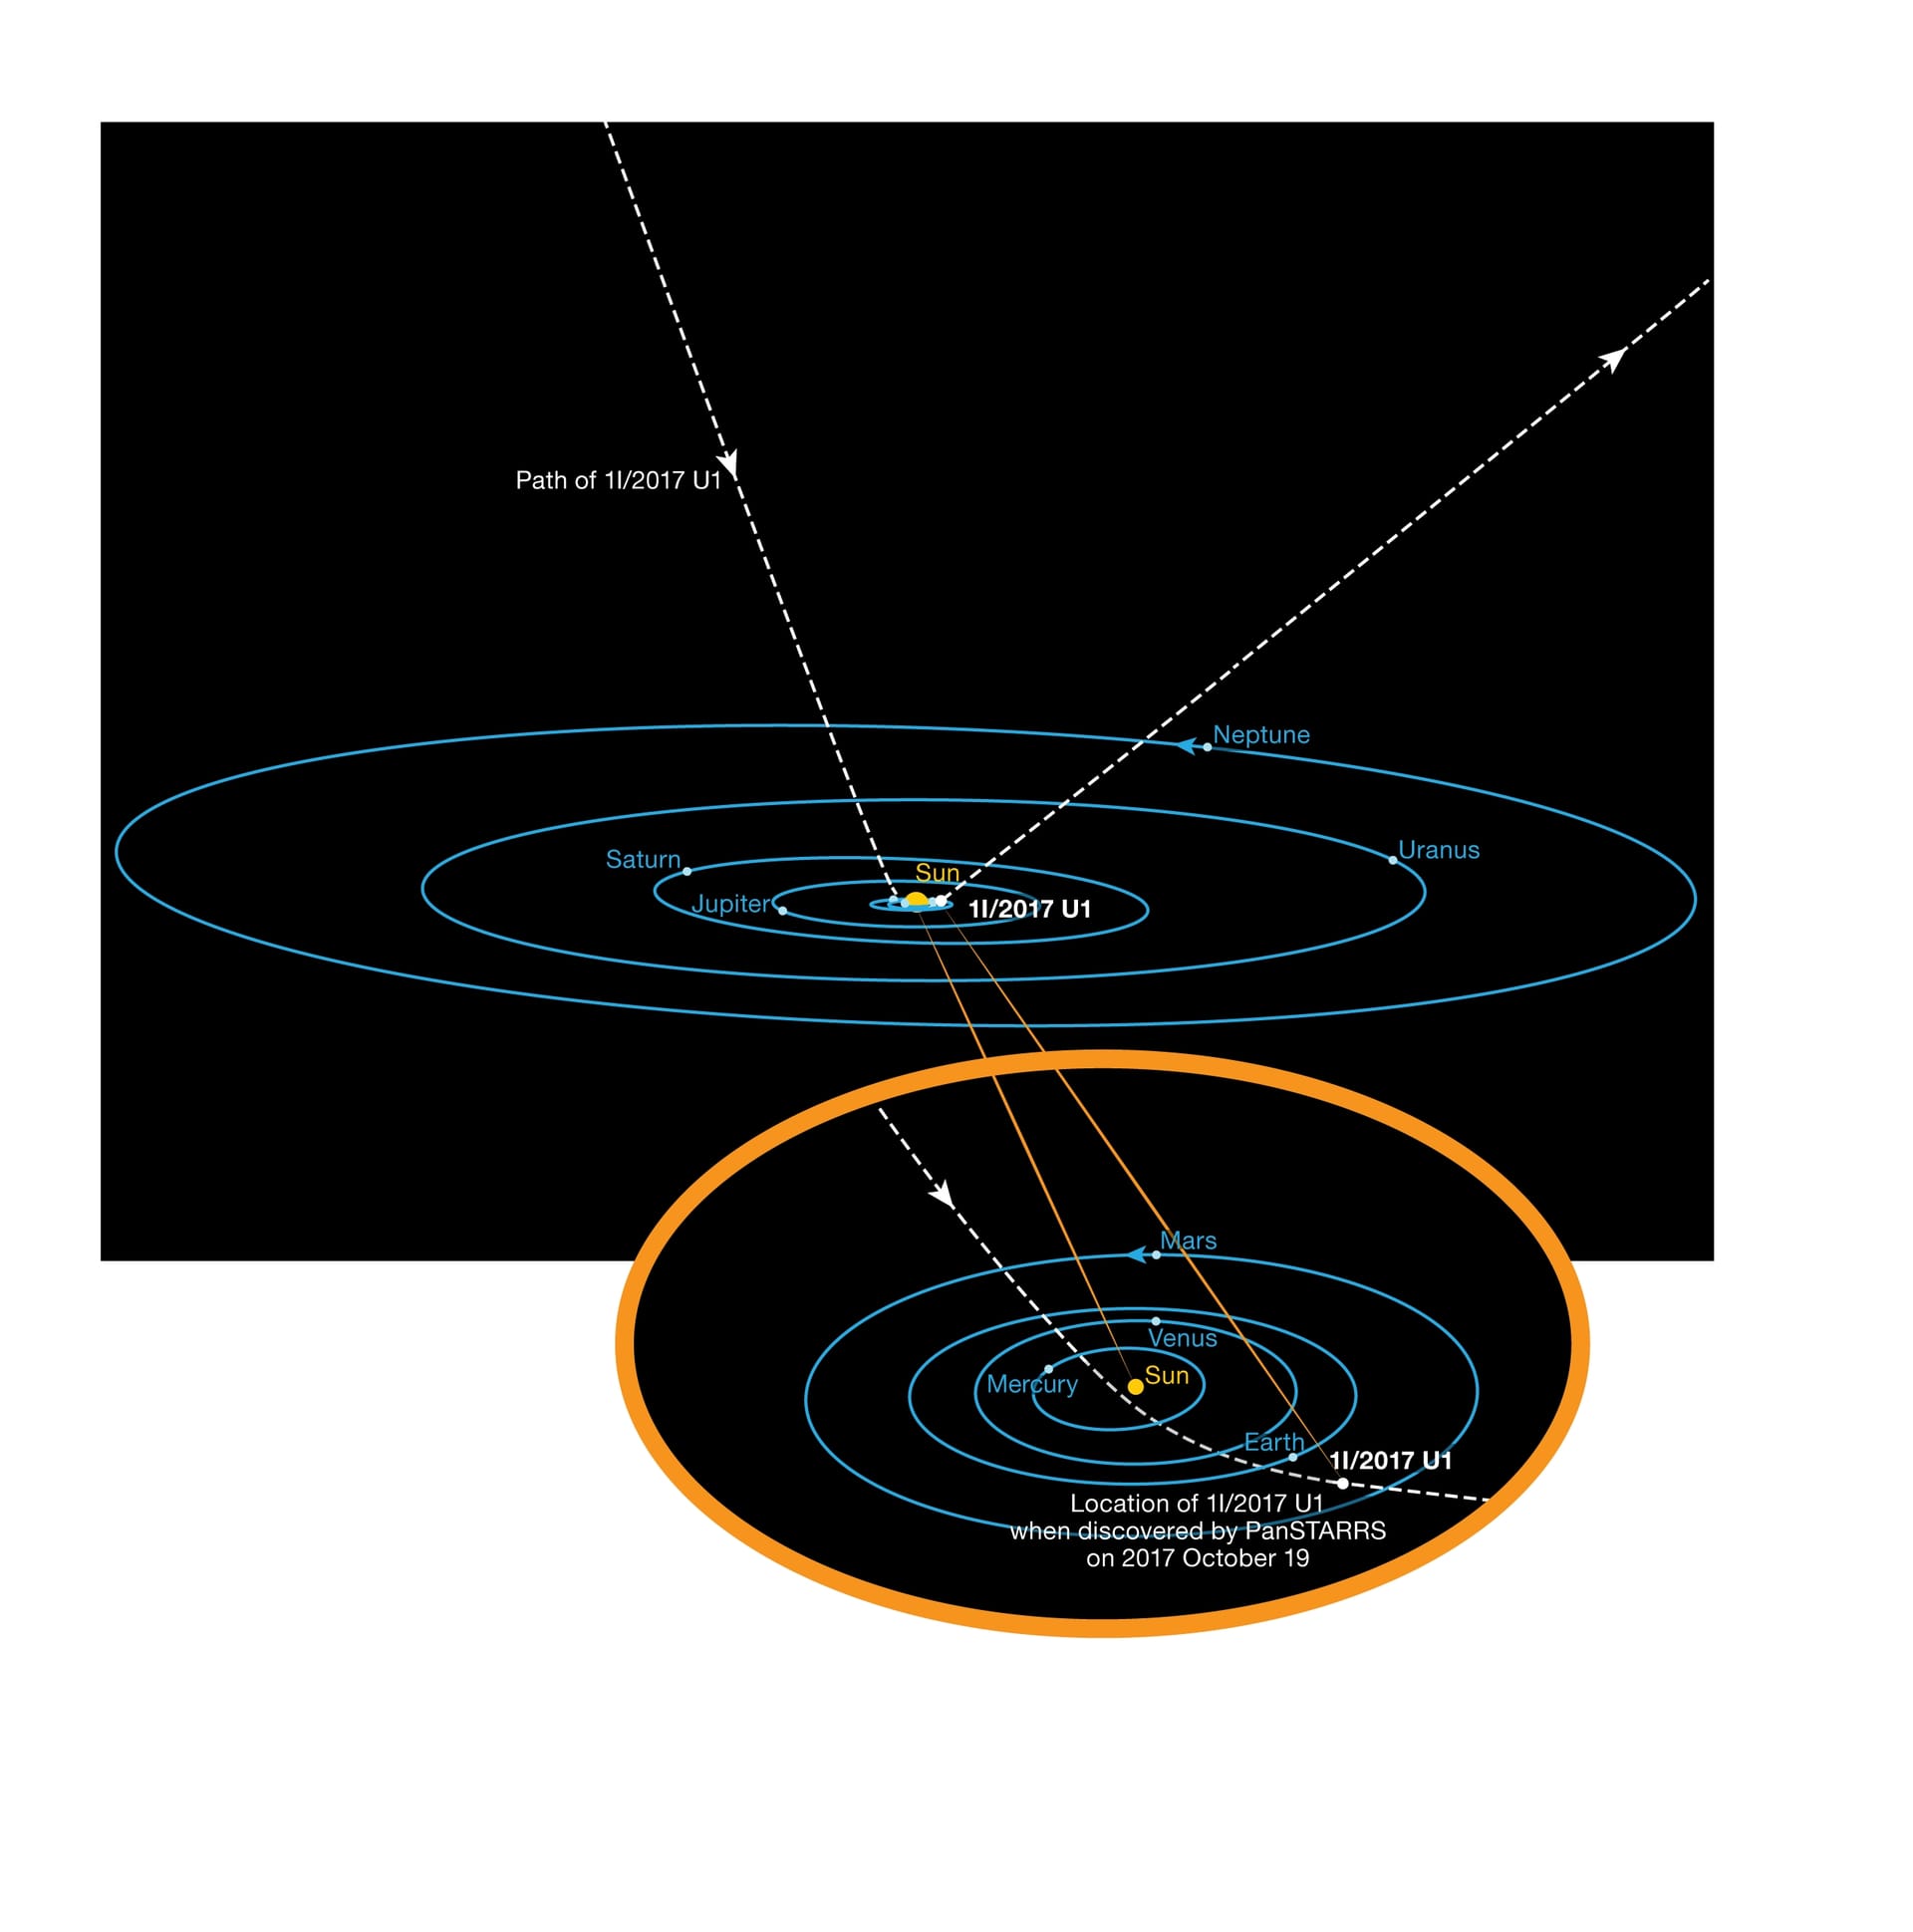 Die Umlaufbahn des interstellaren Asteroiden in einer Grafik.